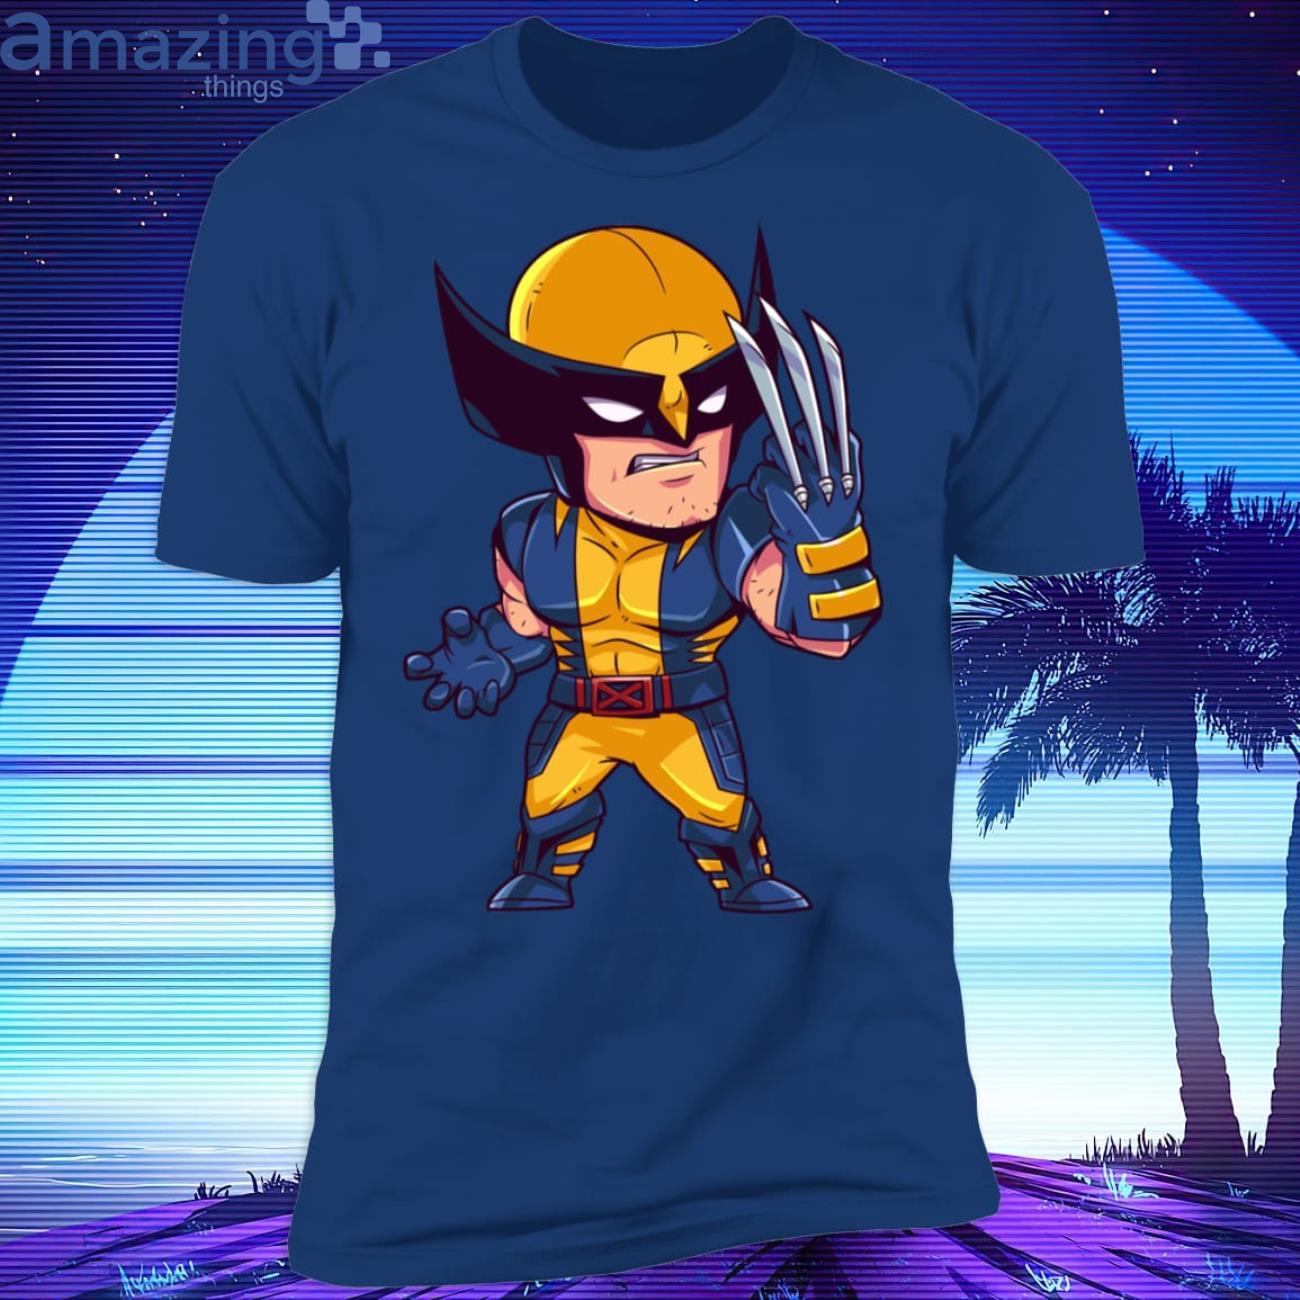 X-Men Wolverine T-Shirt